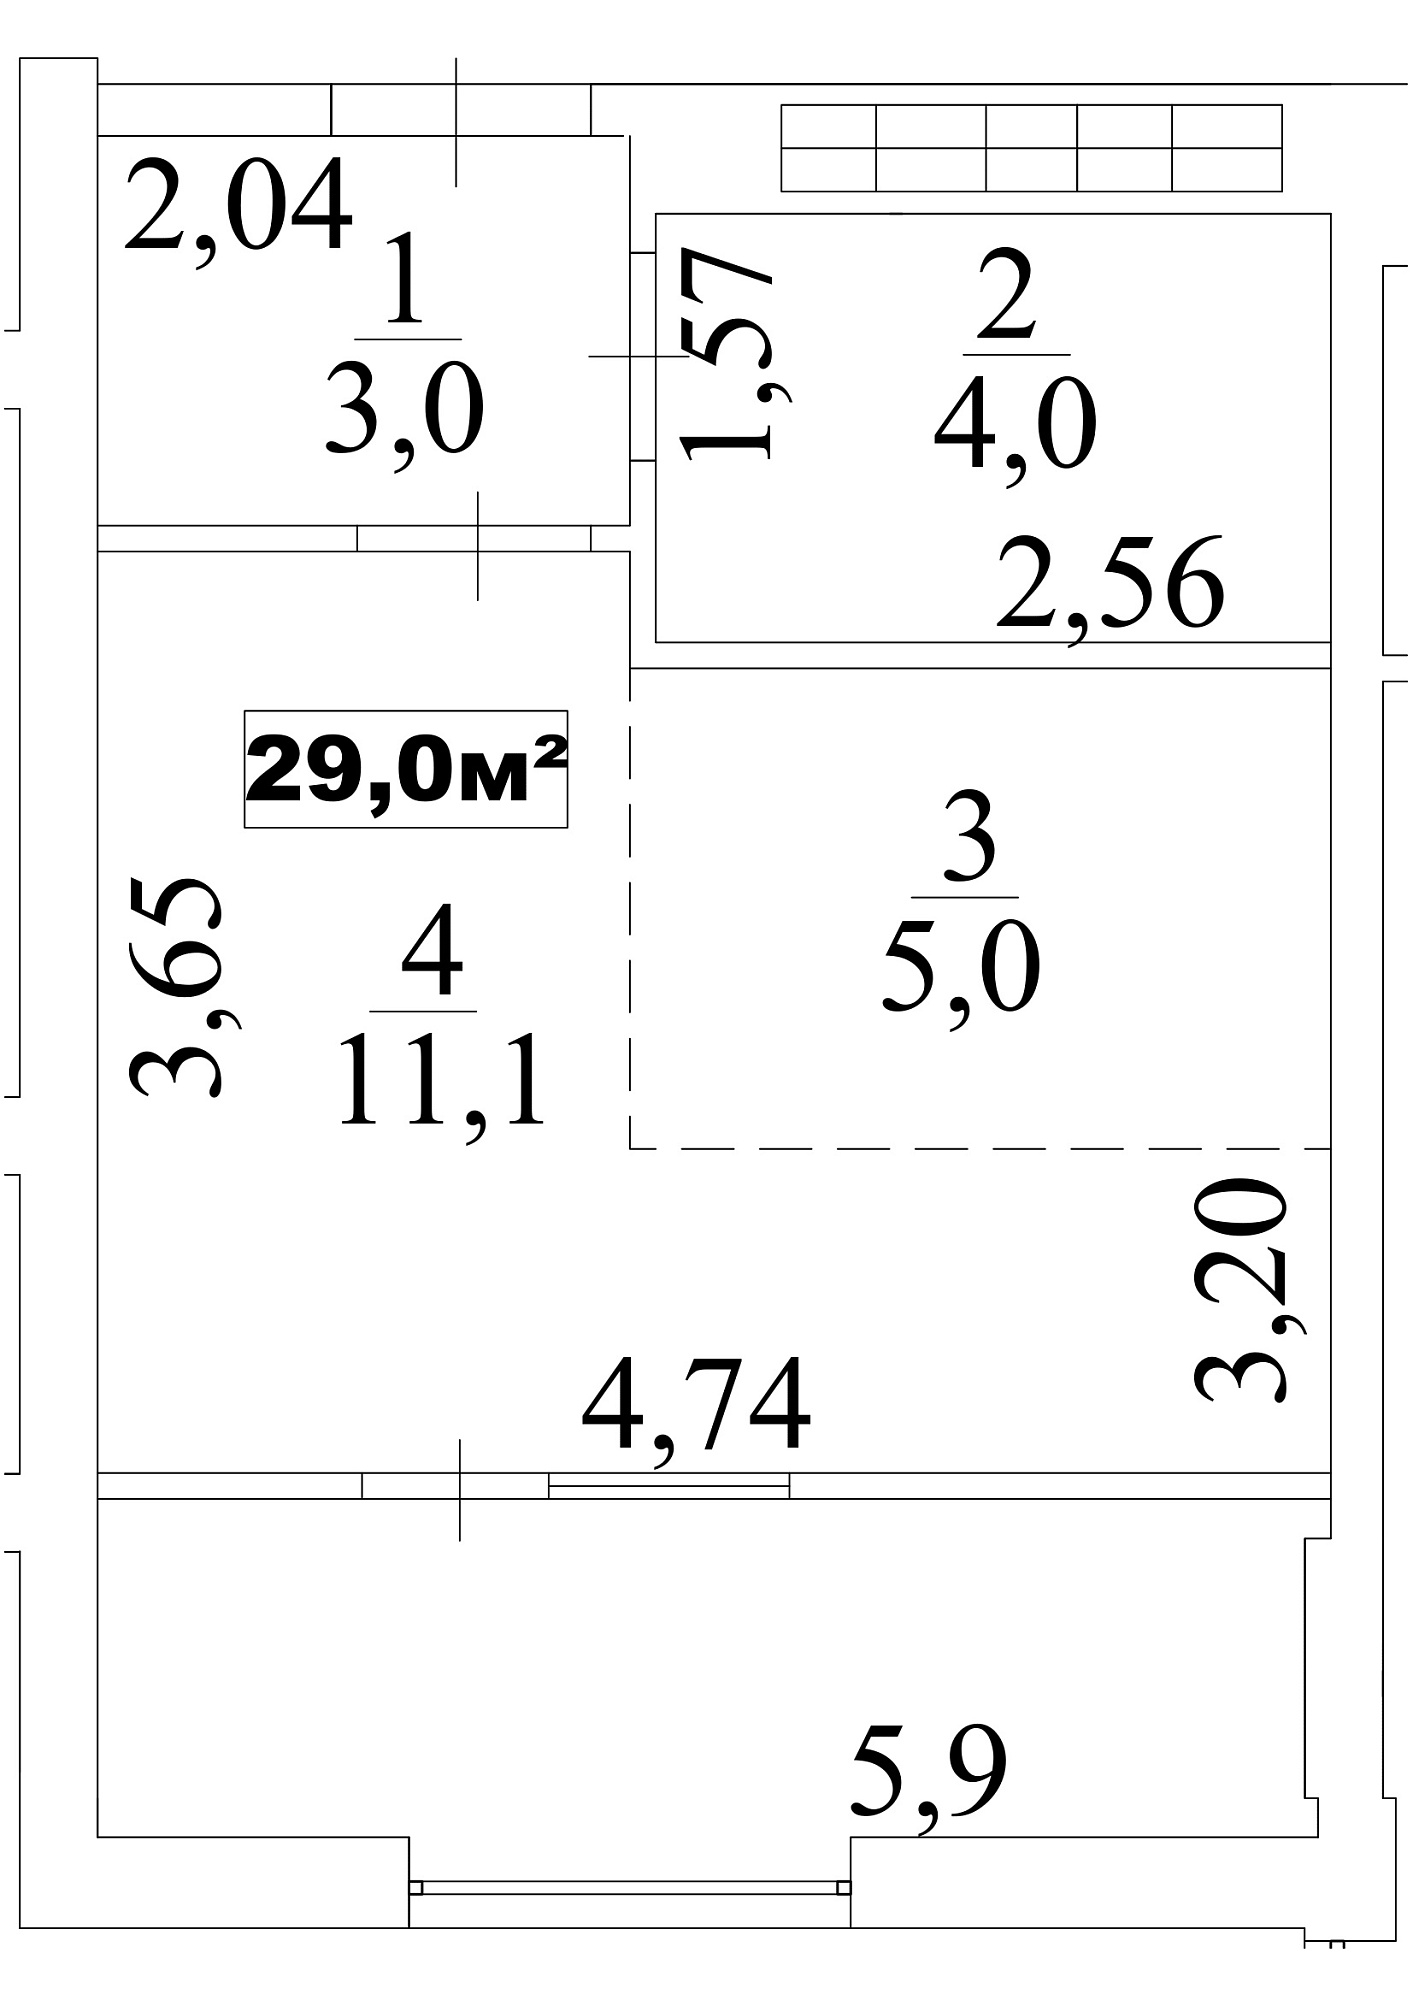 Планування Smart-квартира площею 29м2, AB-10-02/00018.